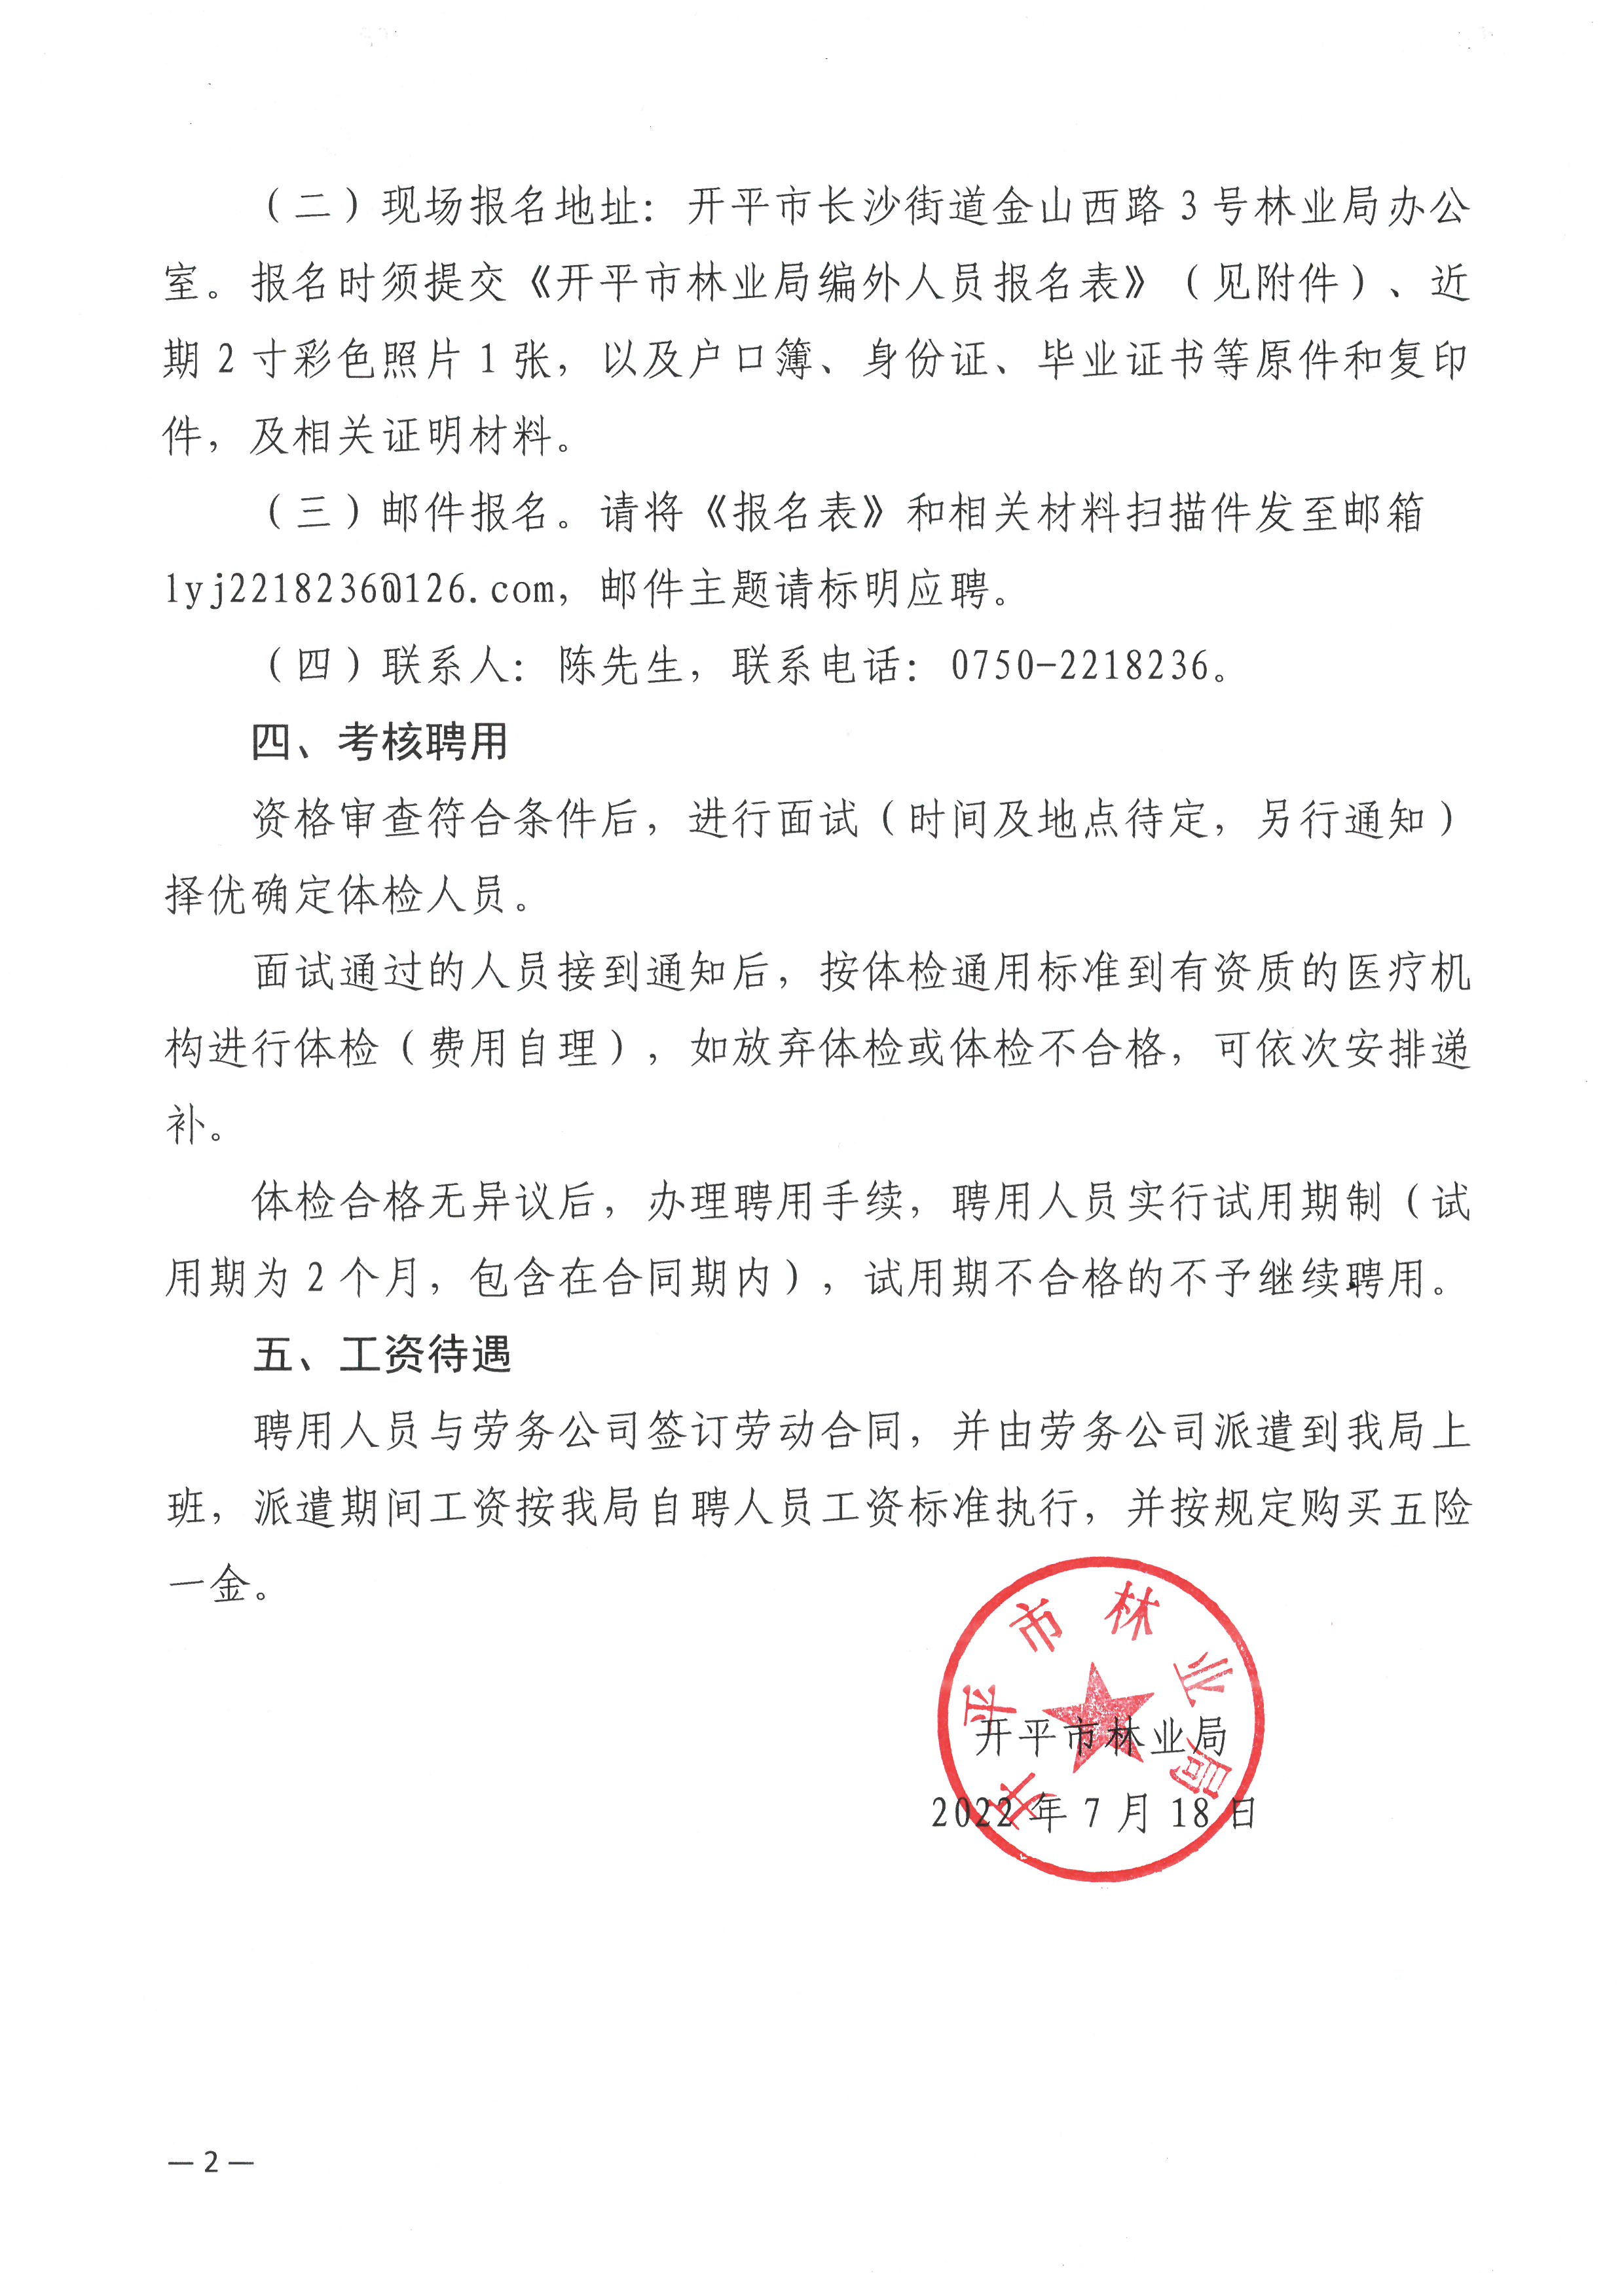 开平市林业局关于公开招聘编外工作人员的公告2(2).jpg